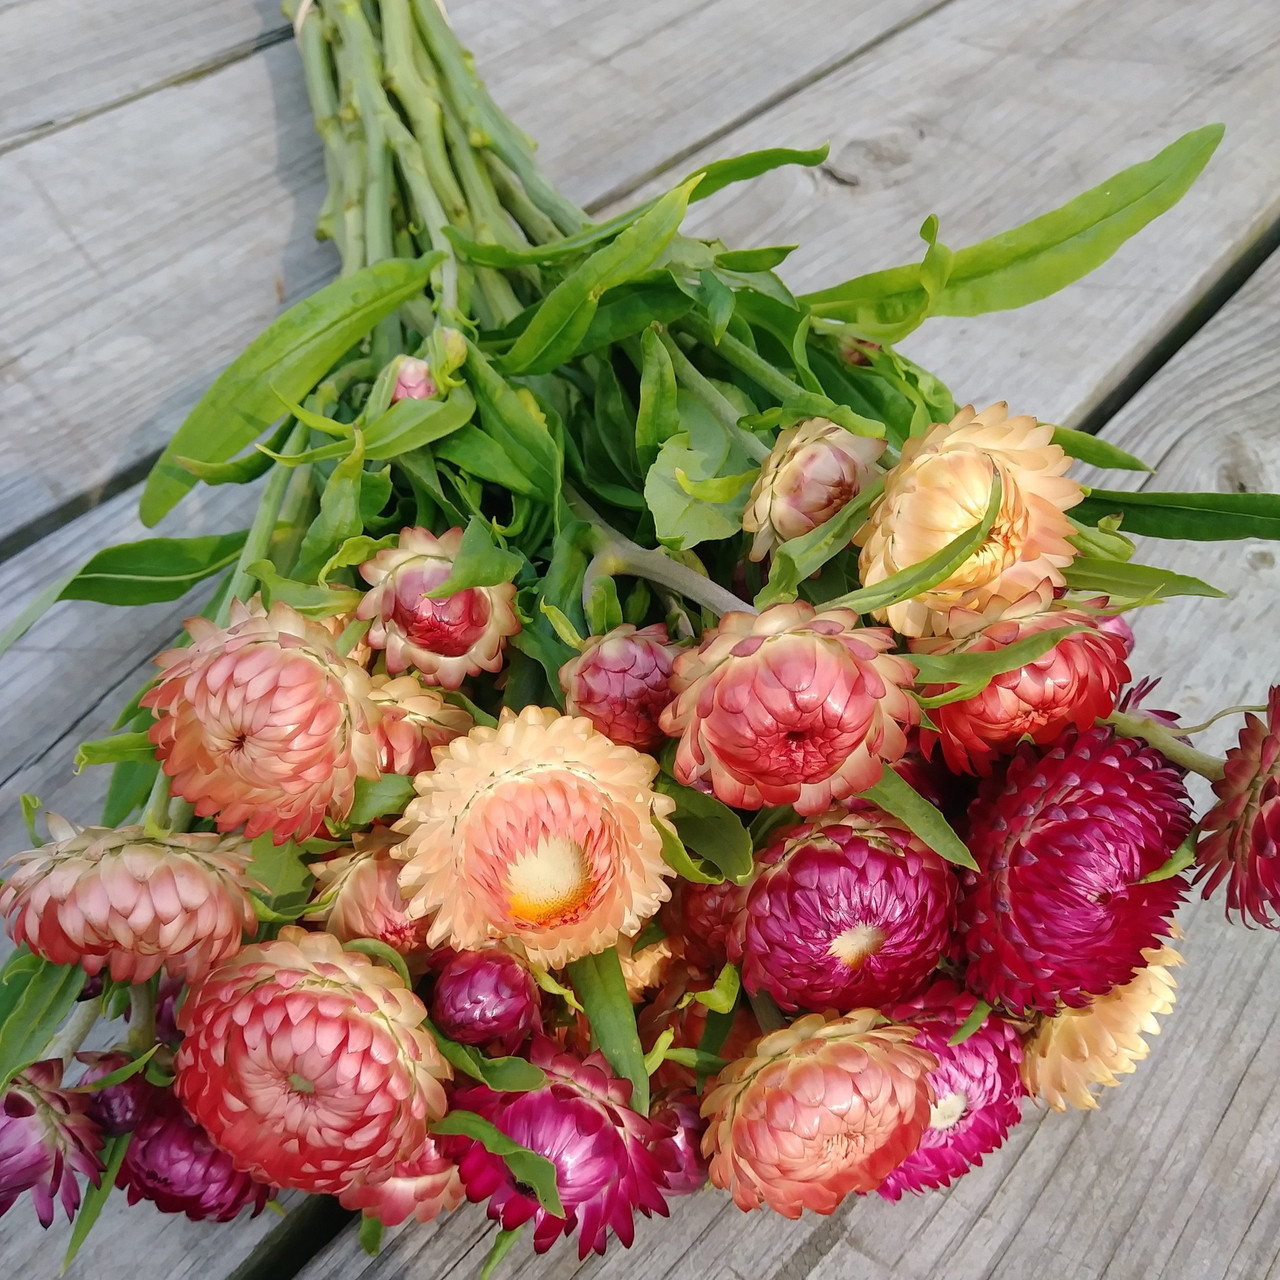 Vibrant Strawflower Seeds (Helichrysum Monstrosum) - Discover Long